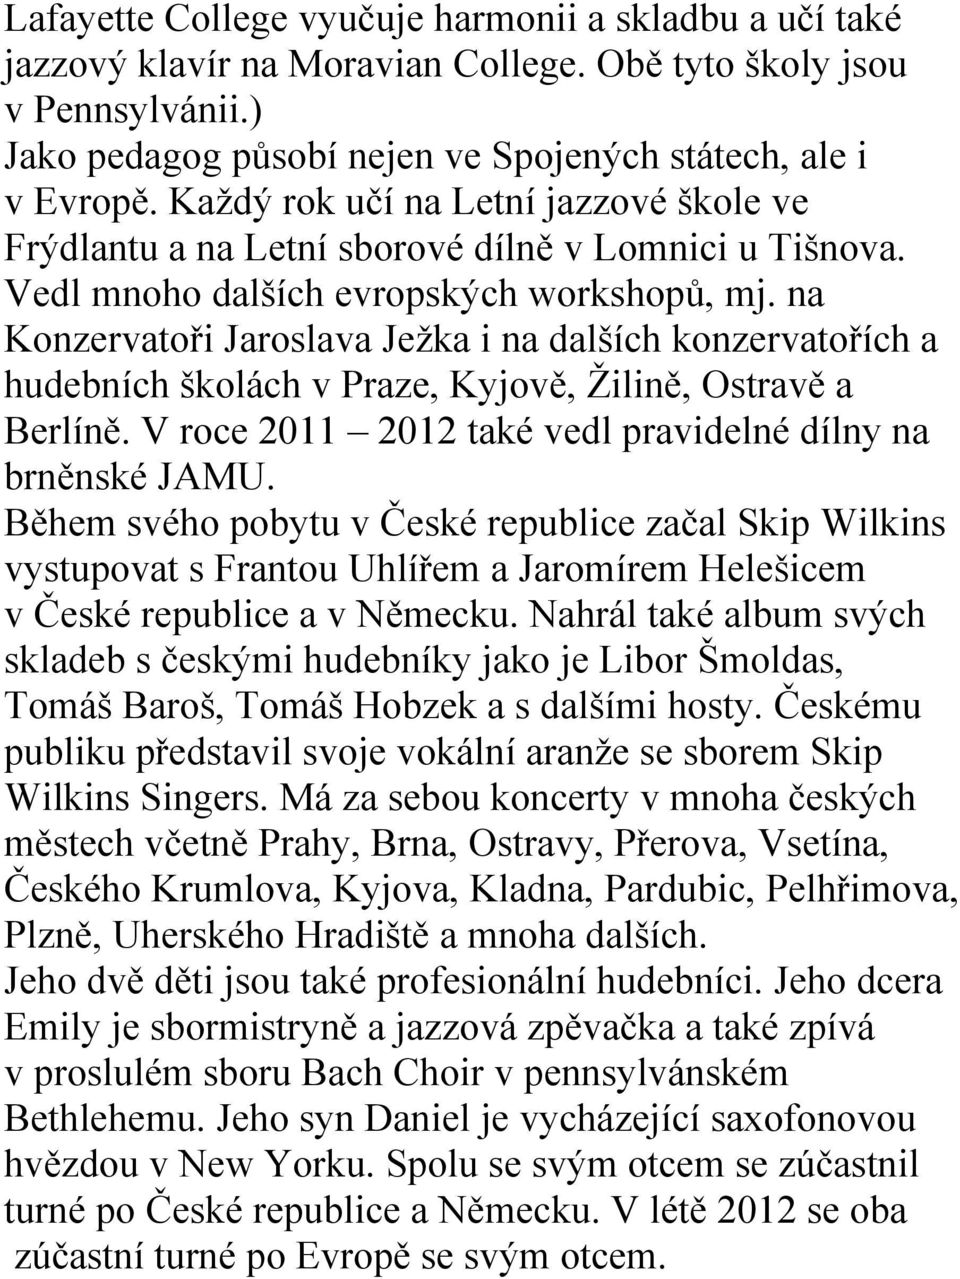 na Konzervatoři Jaroslava Ježka i na dalších konzervatořích a hudebních školách v Praze, Kyjově, Žilině, Ostravě a Berlíně. V roce 2011 2012 také vedl pravidelné dílny na brněnské JAMU.